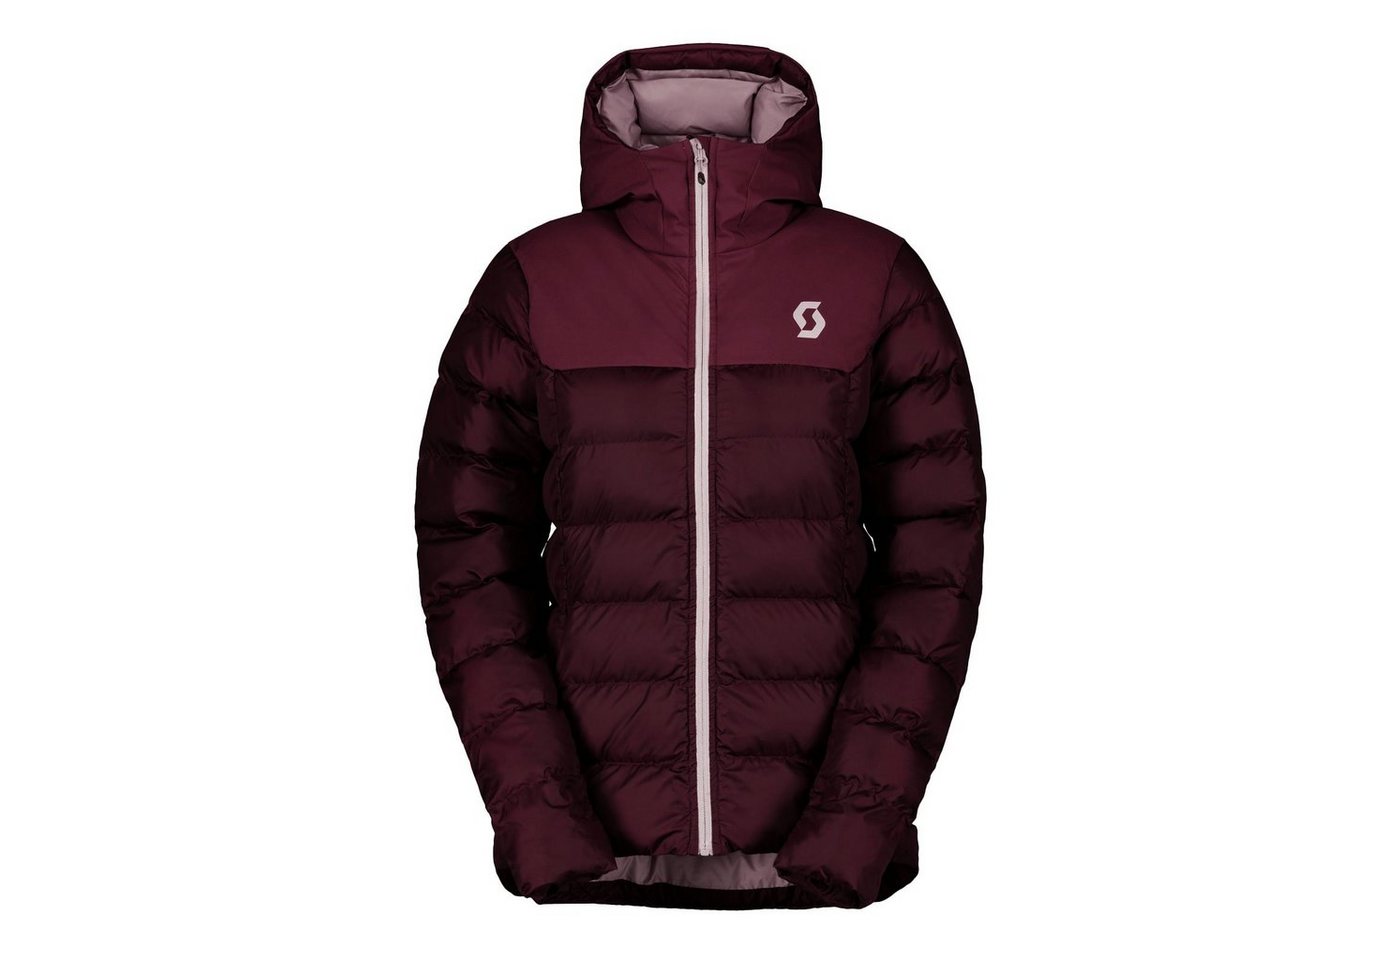 Scott Winterjacke Insuloft Warm Jacket mit aufgedrucktem Markenlogo von Scott